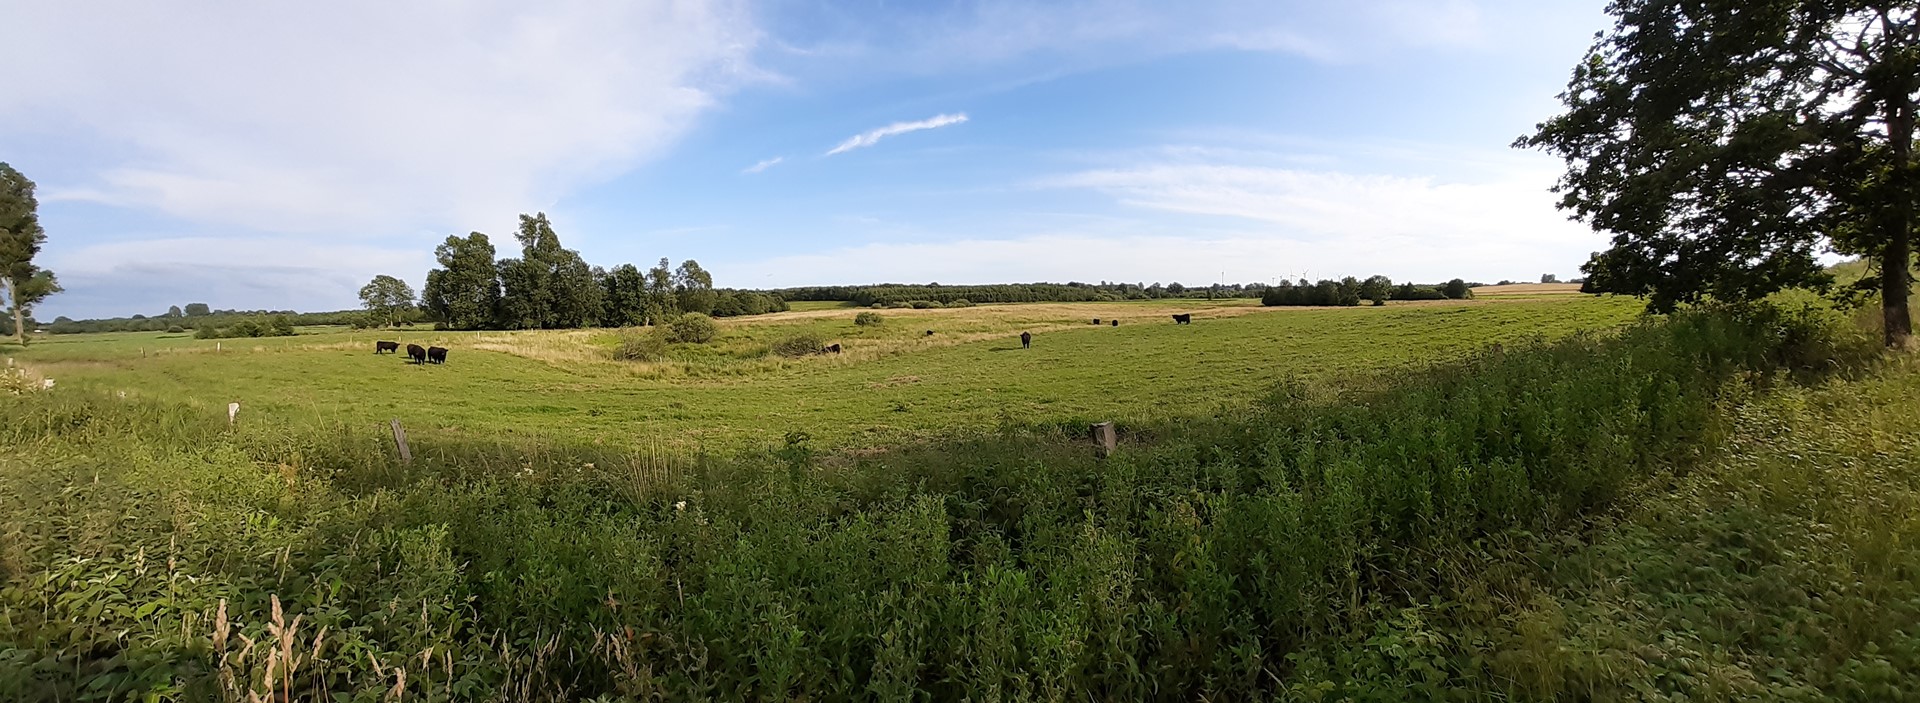 Panorama Weide der Galloway Bullen